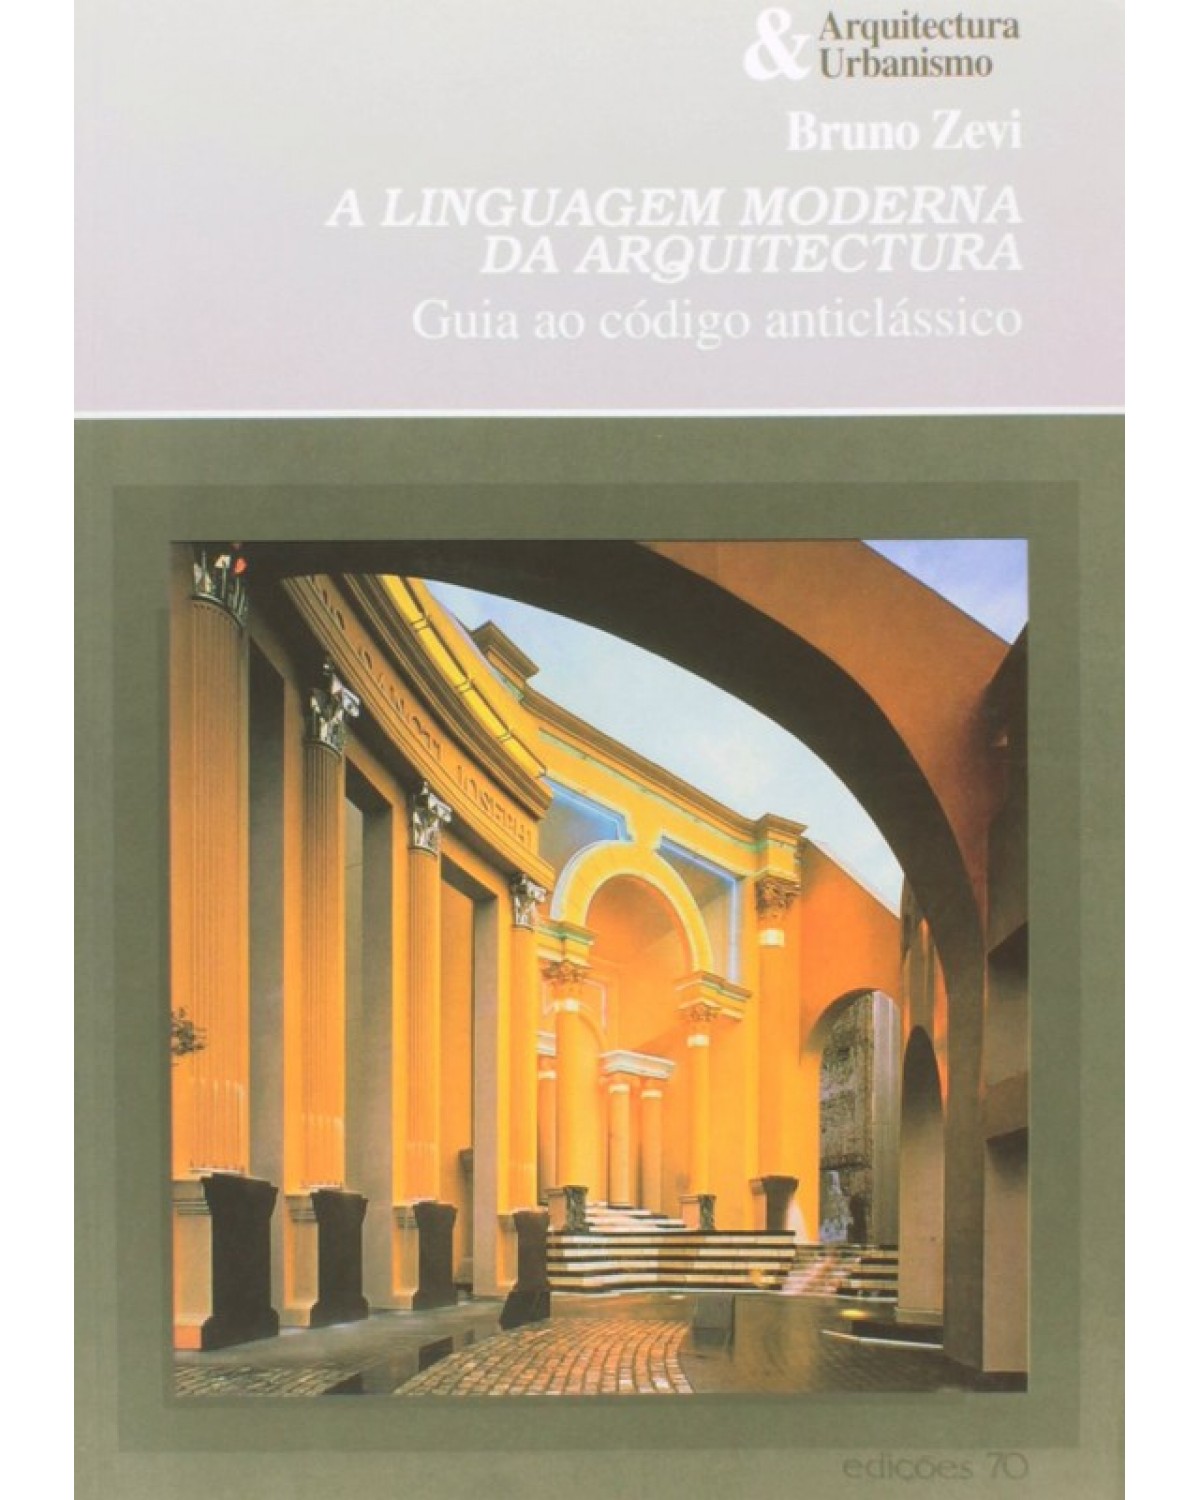 A linguagem moderna da arquitectura - guia ao código anticlássico - 1ª Edição | 2002